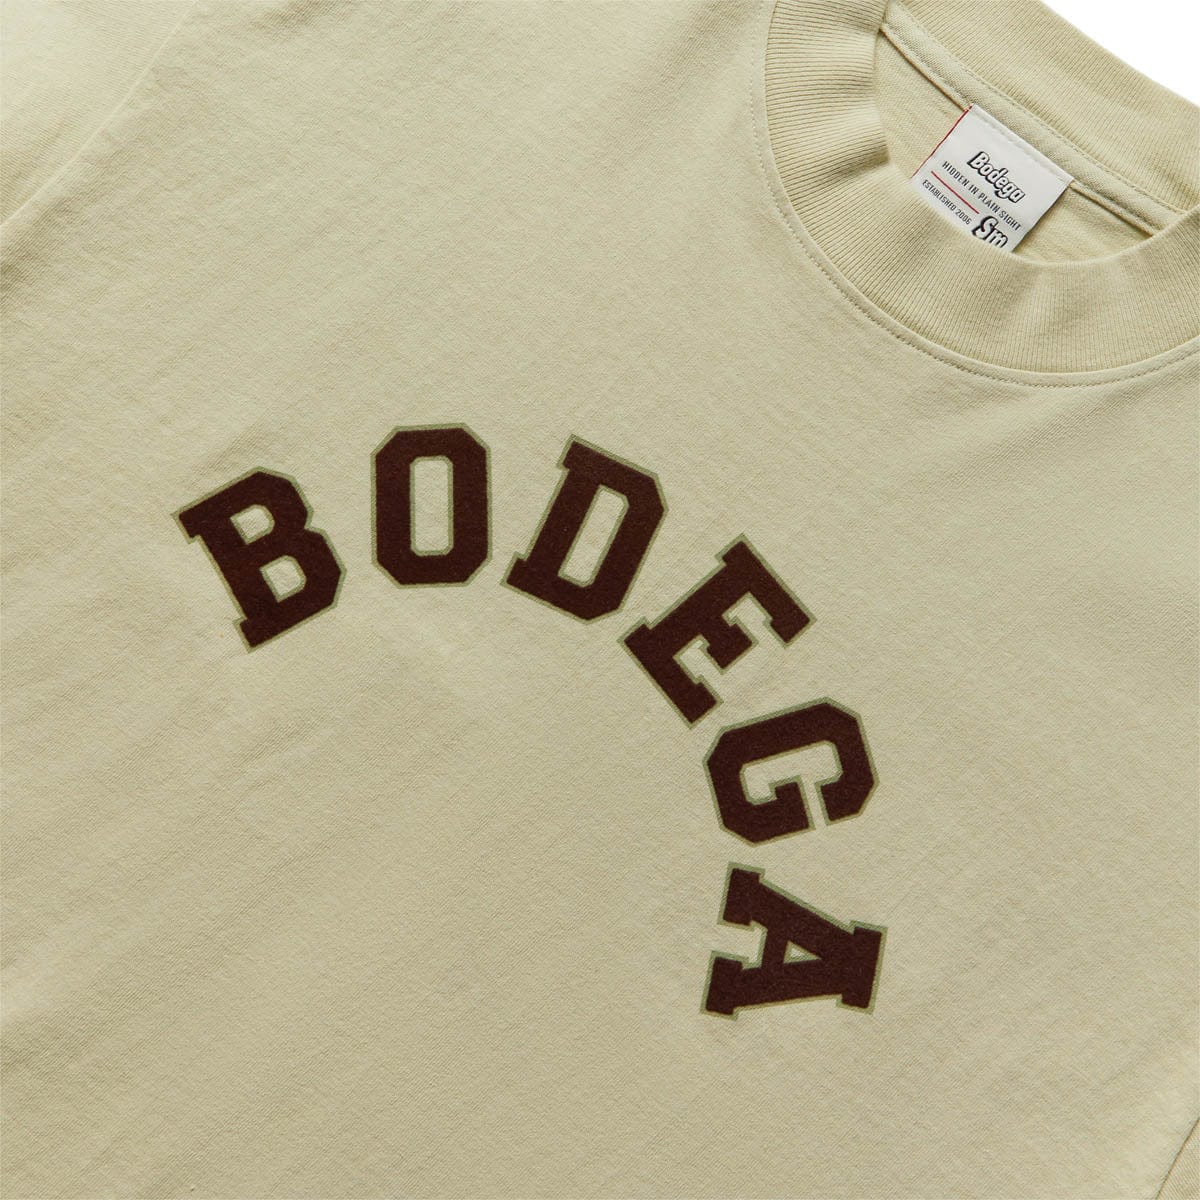 Bodega T-Shirts CO-ED T-SHIRT